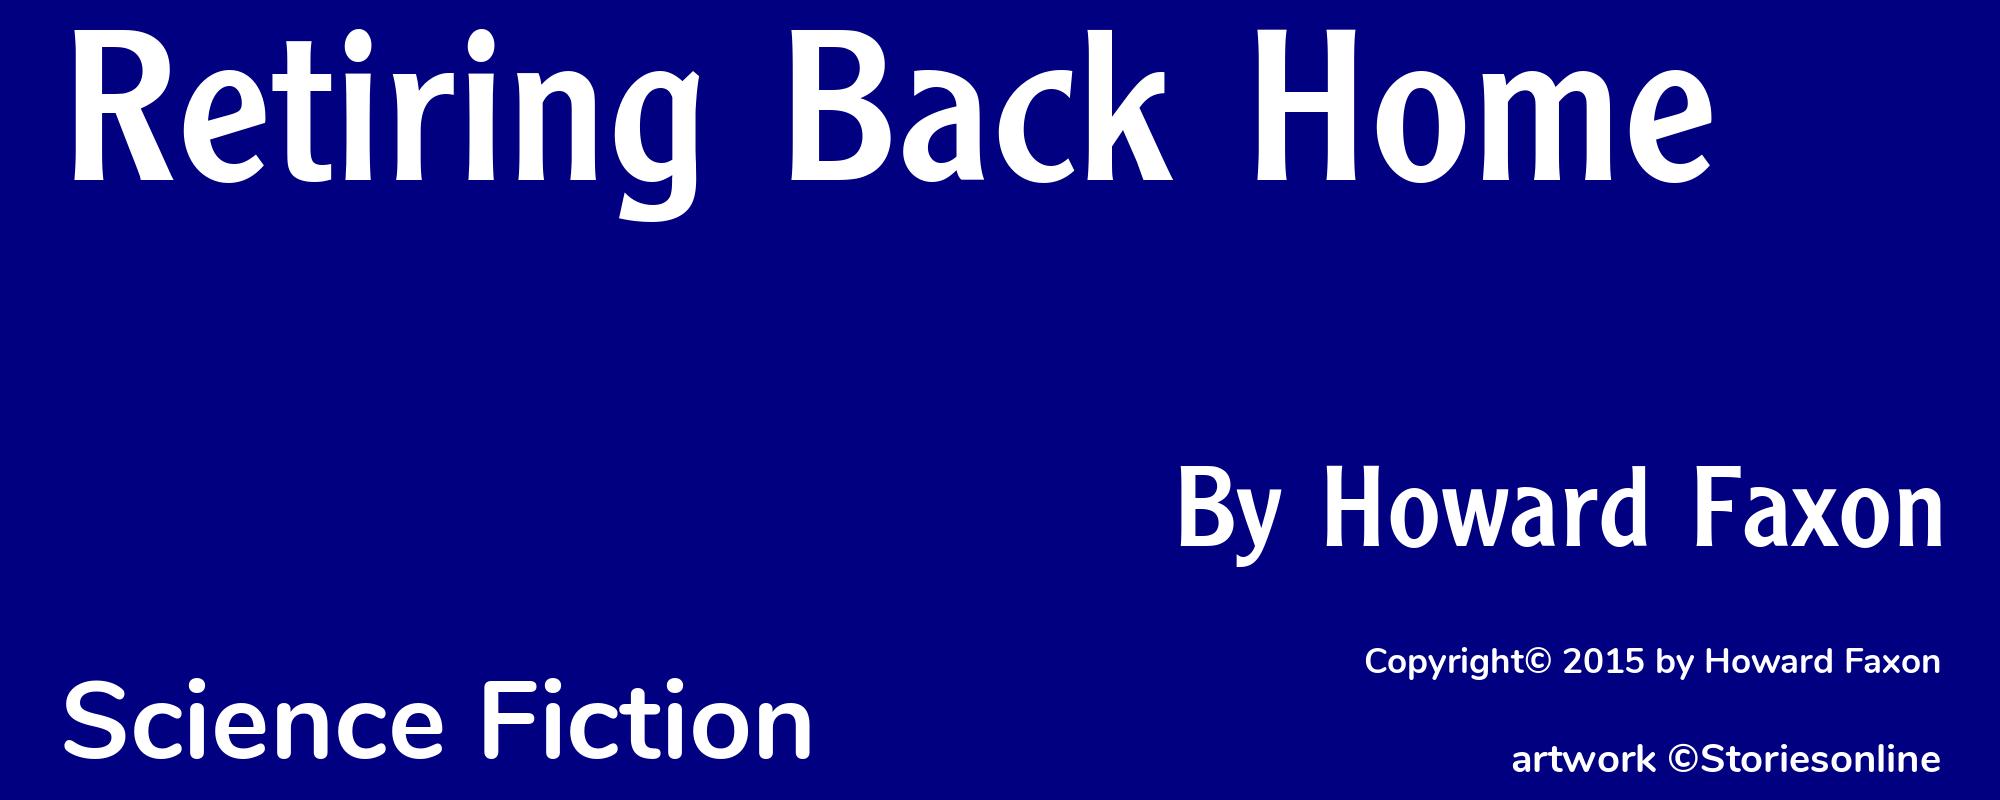 Retiring Back Home - Cover